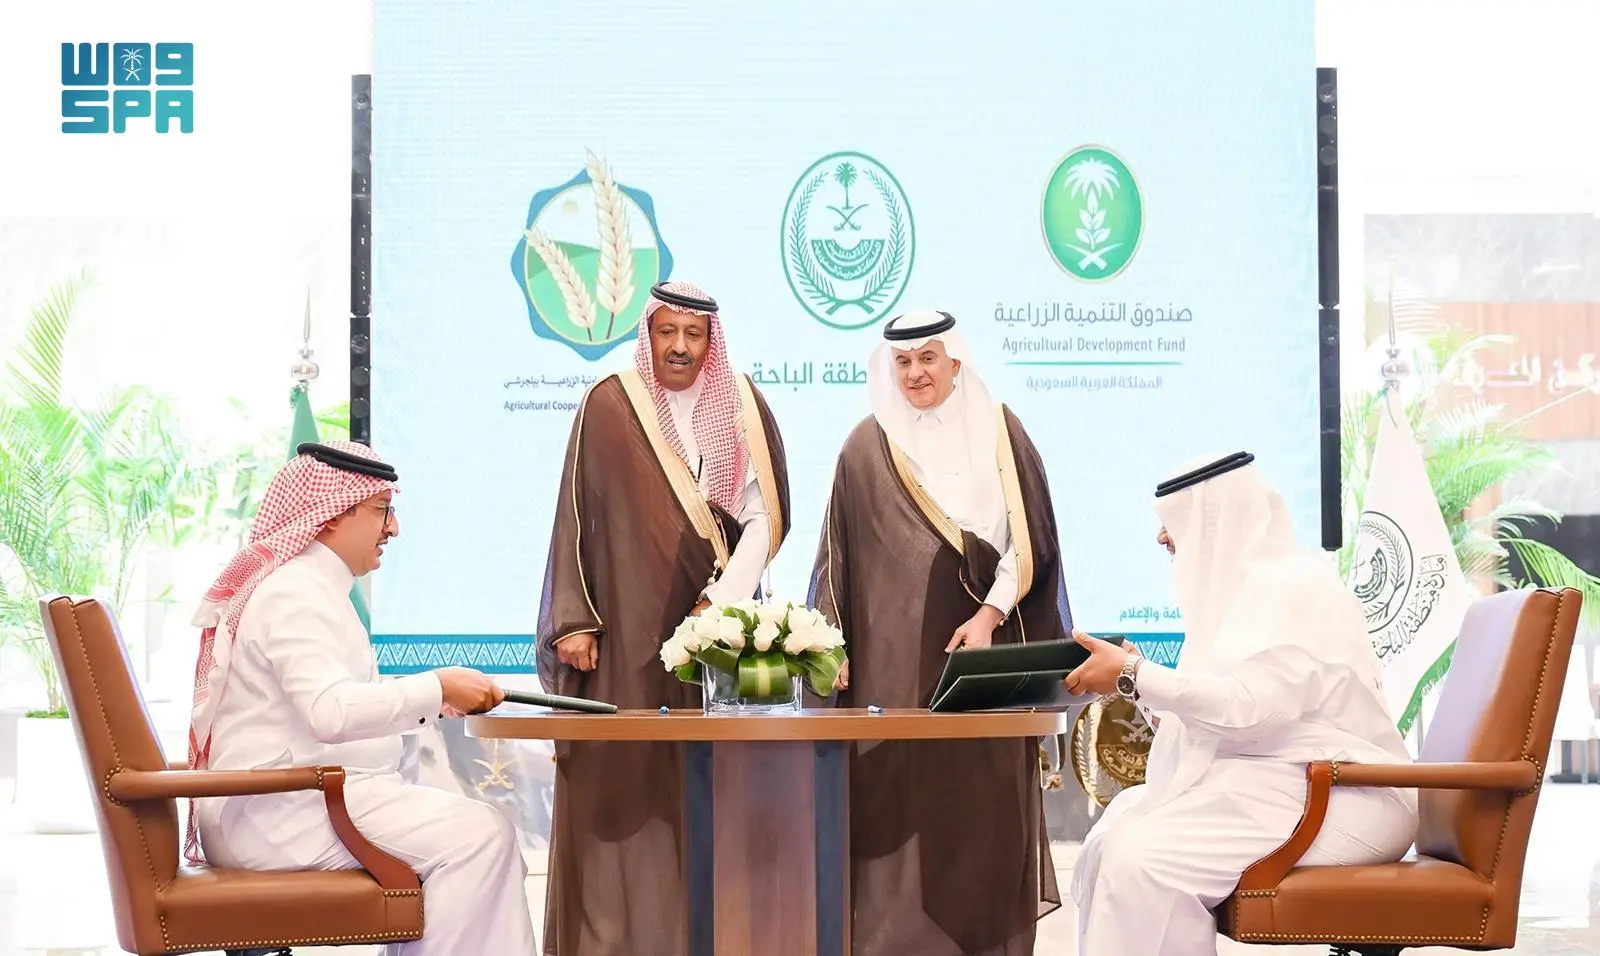 أمير الباحة يشهد توقيع عقد تمويل مشروع مدينة البُن في المنطقة بقيمة 72 مليون ريال